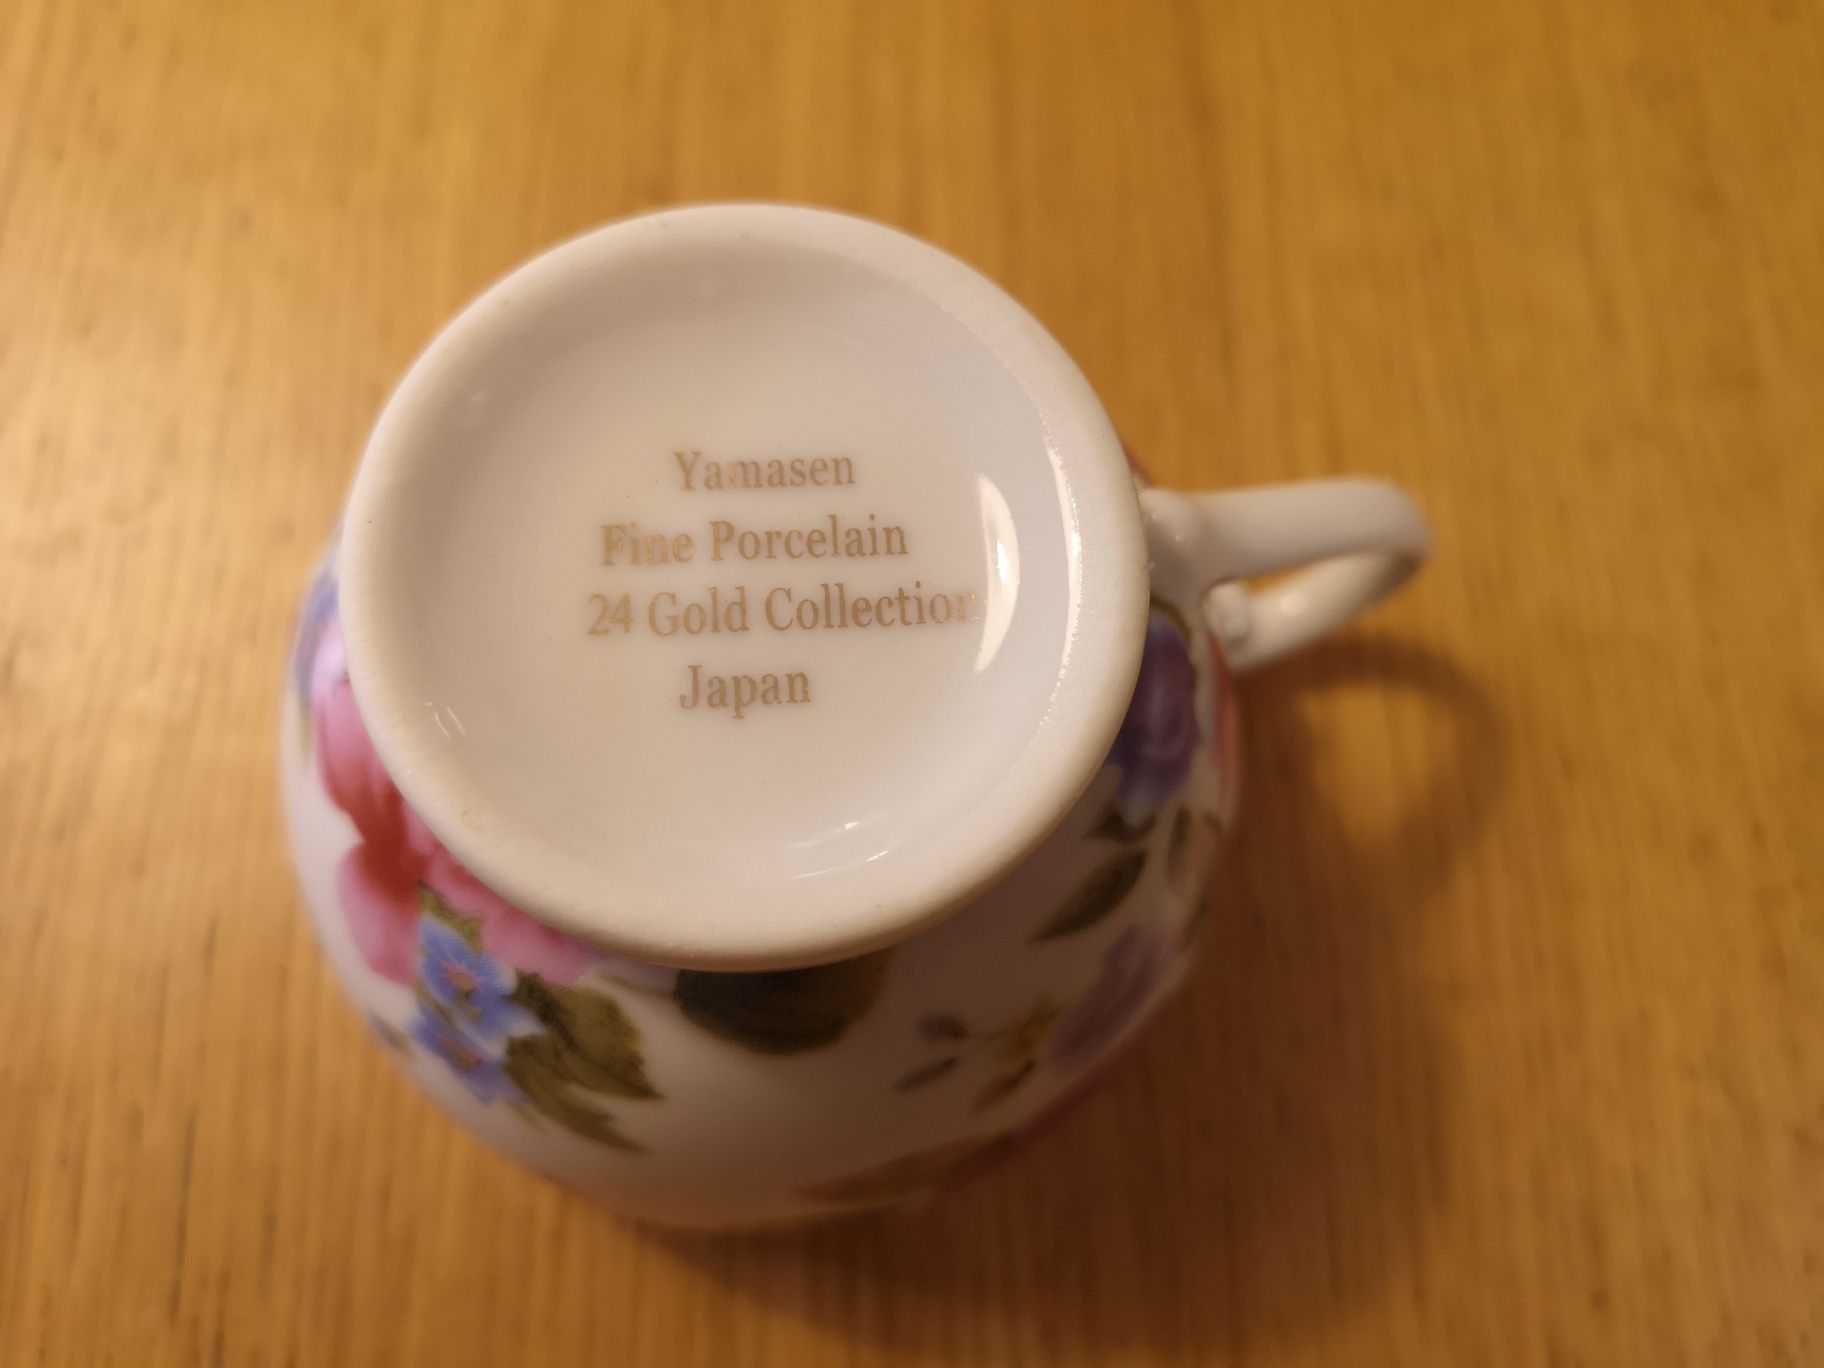 Komplet 6 filiżanek Yamasen Fine Porcelain 24 Gold Collection Japan